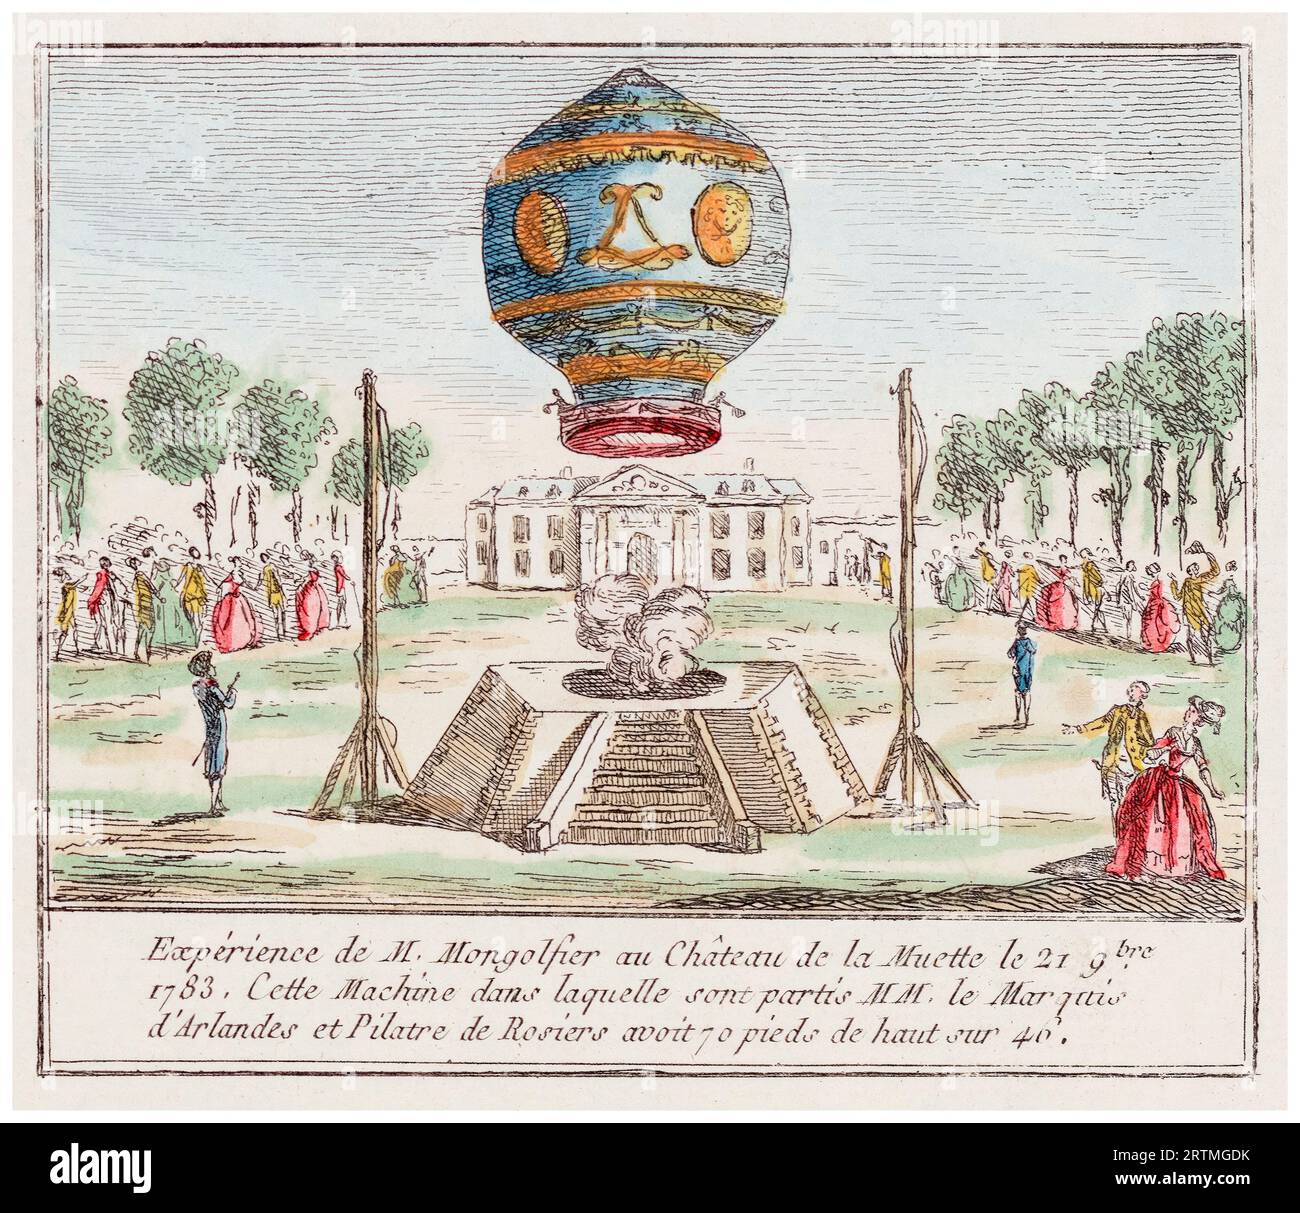 Jean-François Pilâtre de Rozier et le marquis d'Arlandes effectuent le premier vol habité sans attache en montgolfière Montgolfier le 21 novembre 1783 devant le roi Louis XVI depuis le jardin du Château de la Muette. Gravure colorée à la main, 1783 Banque D'Images